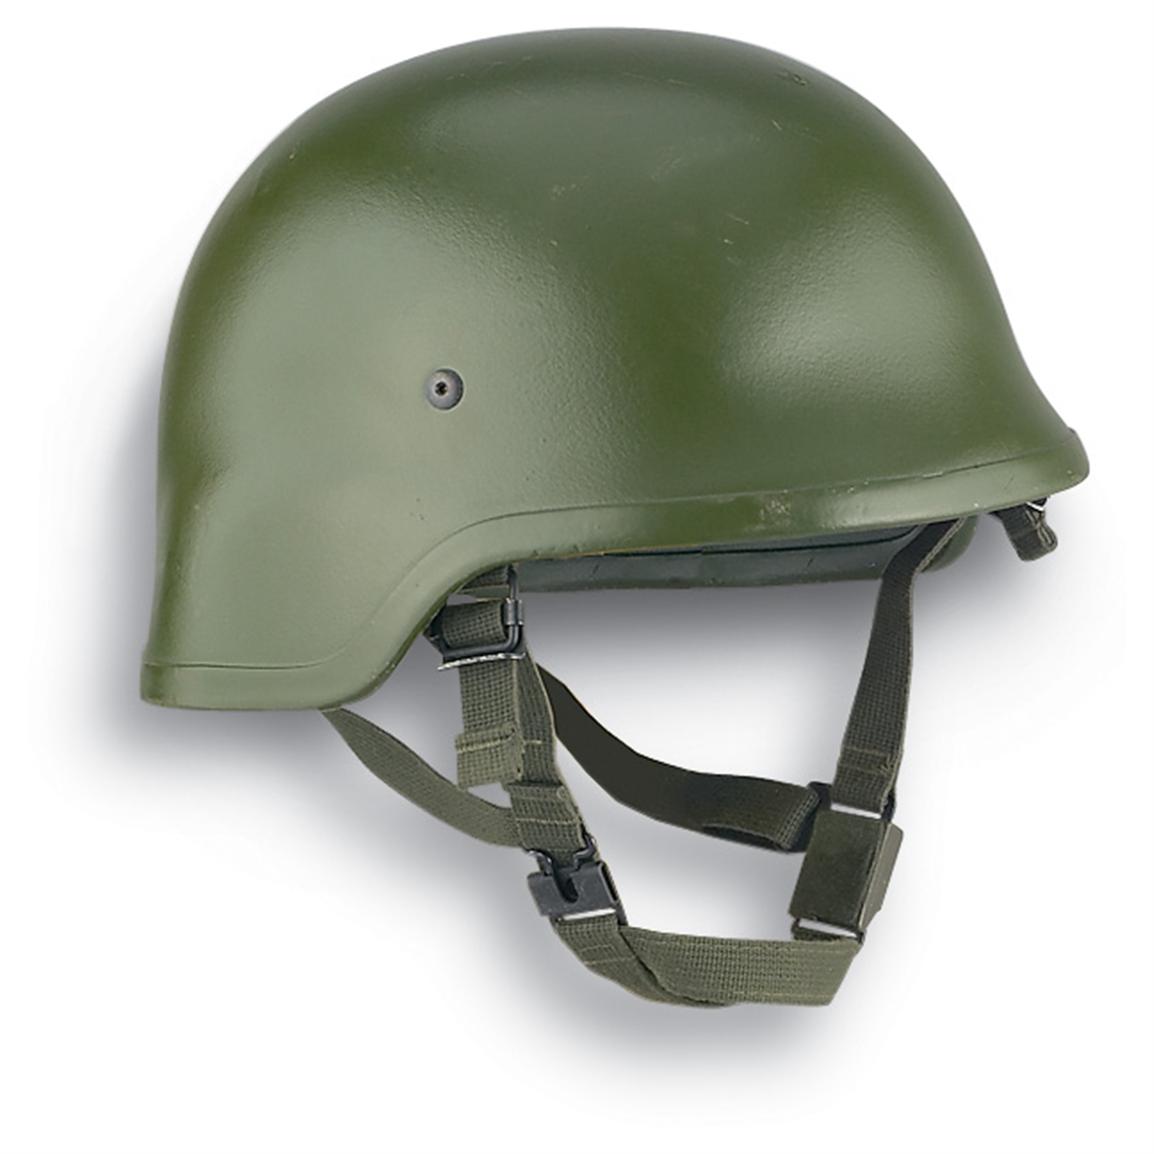 New German Military Helmet with Kevlar® - 130990, Helmets & Accessories